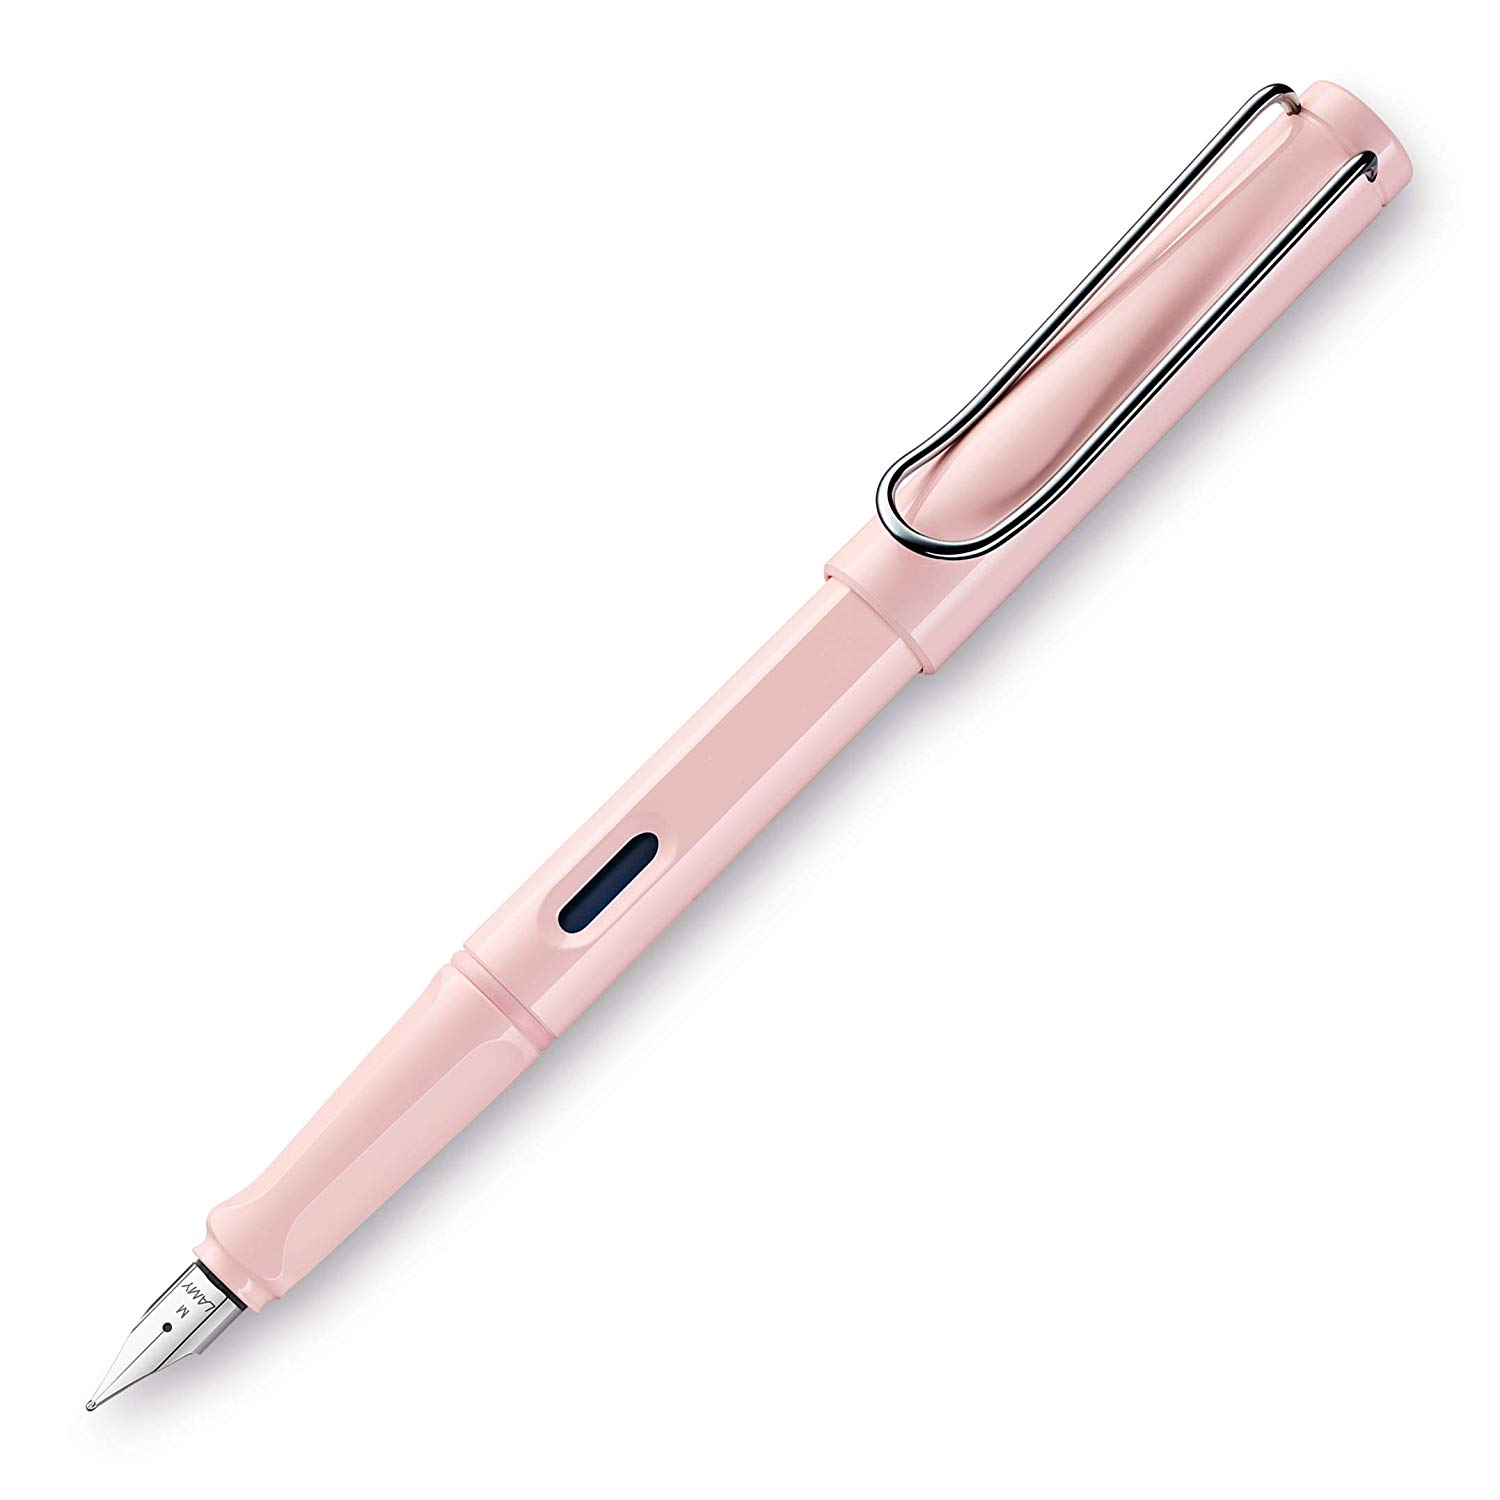 Ручка перьевая LAMY 036 safari Special Edition 2019, M пудровый розовый Lamy-4033561 - фото 1